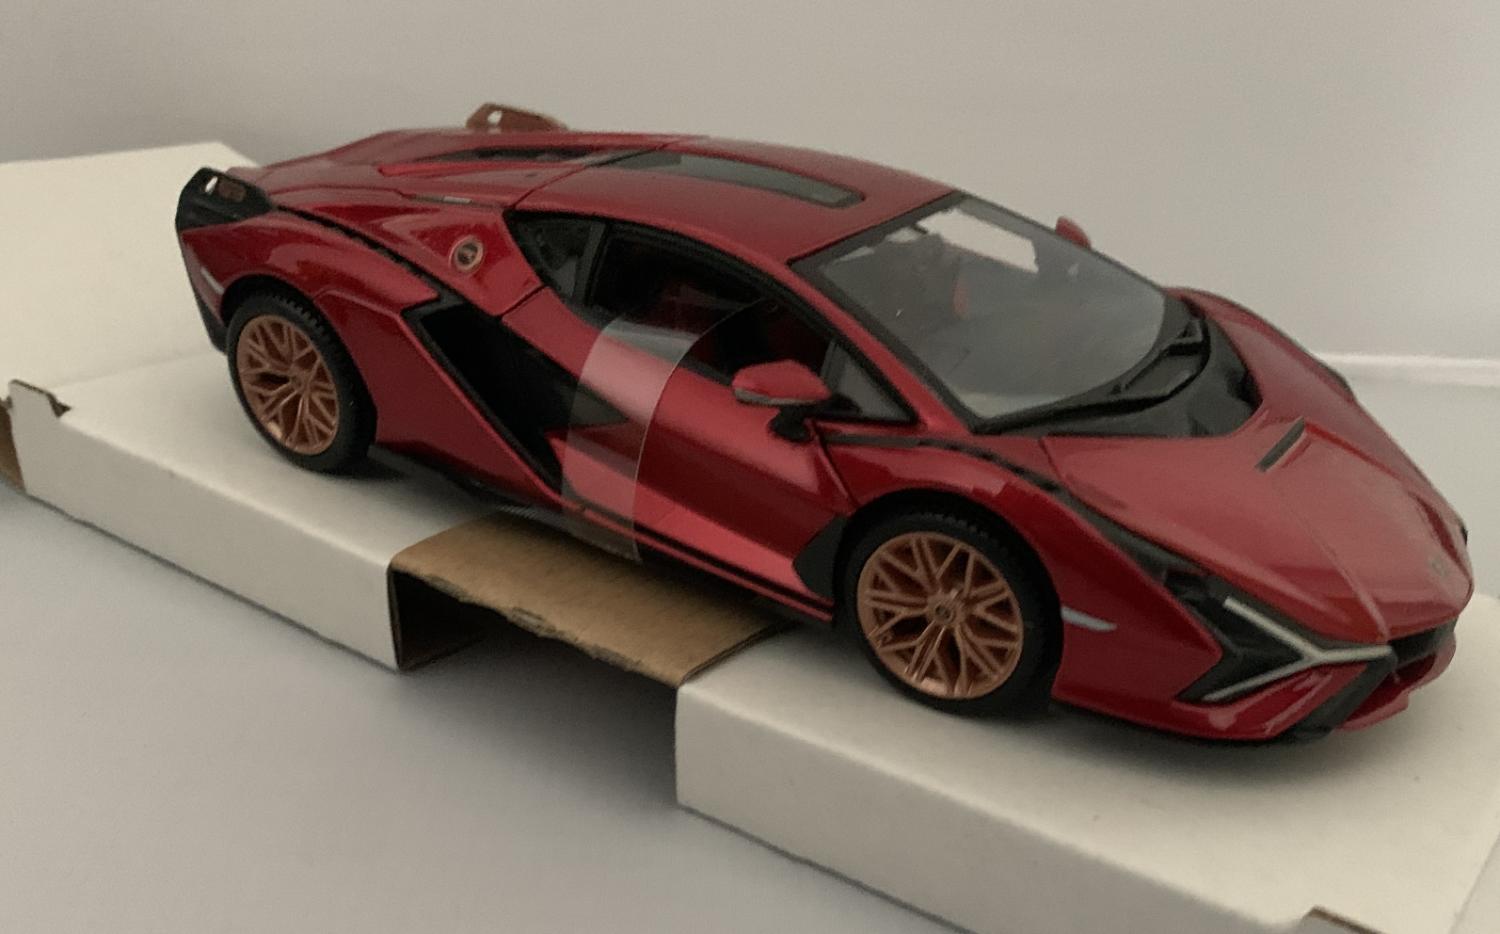 Lamborghini Sian FKP 37 in metallic red 1:24 scale model from Bburago